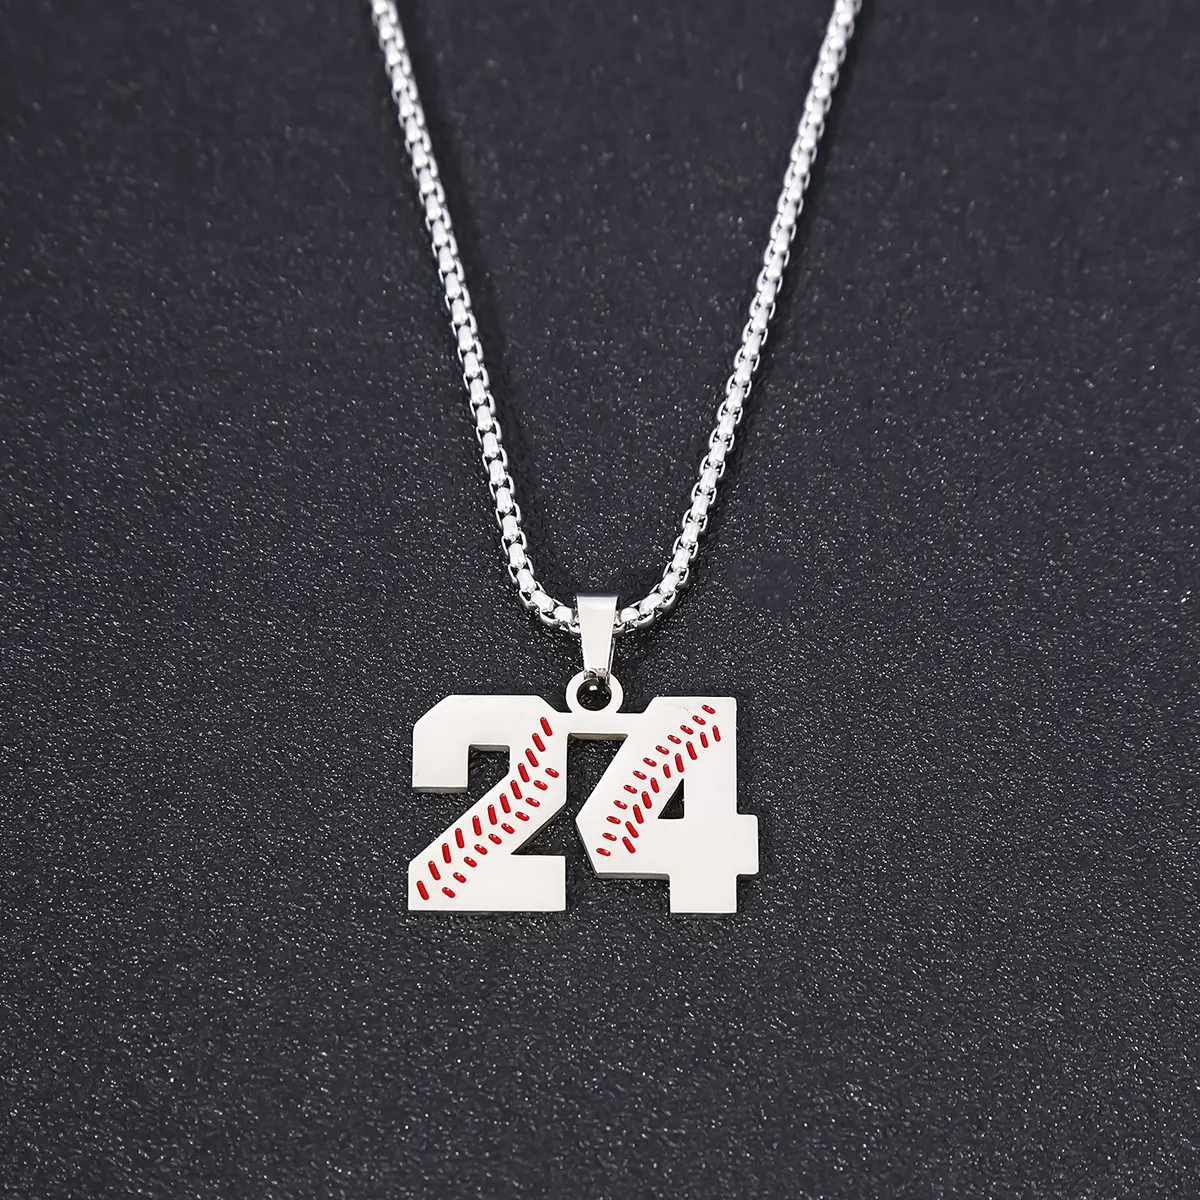 Индивидуальные номера принимаются, 0-99 футбол баскетбол спорт ювелирные изделия из нержавеющей стали бейсбол номер 24 ожерелье для парня Подарок